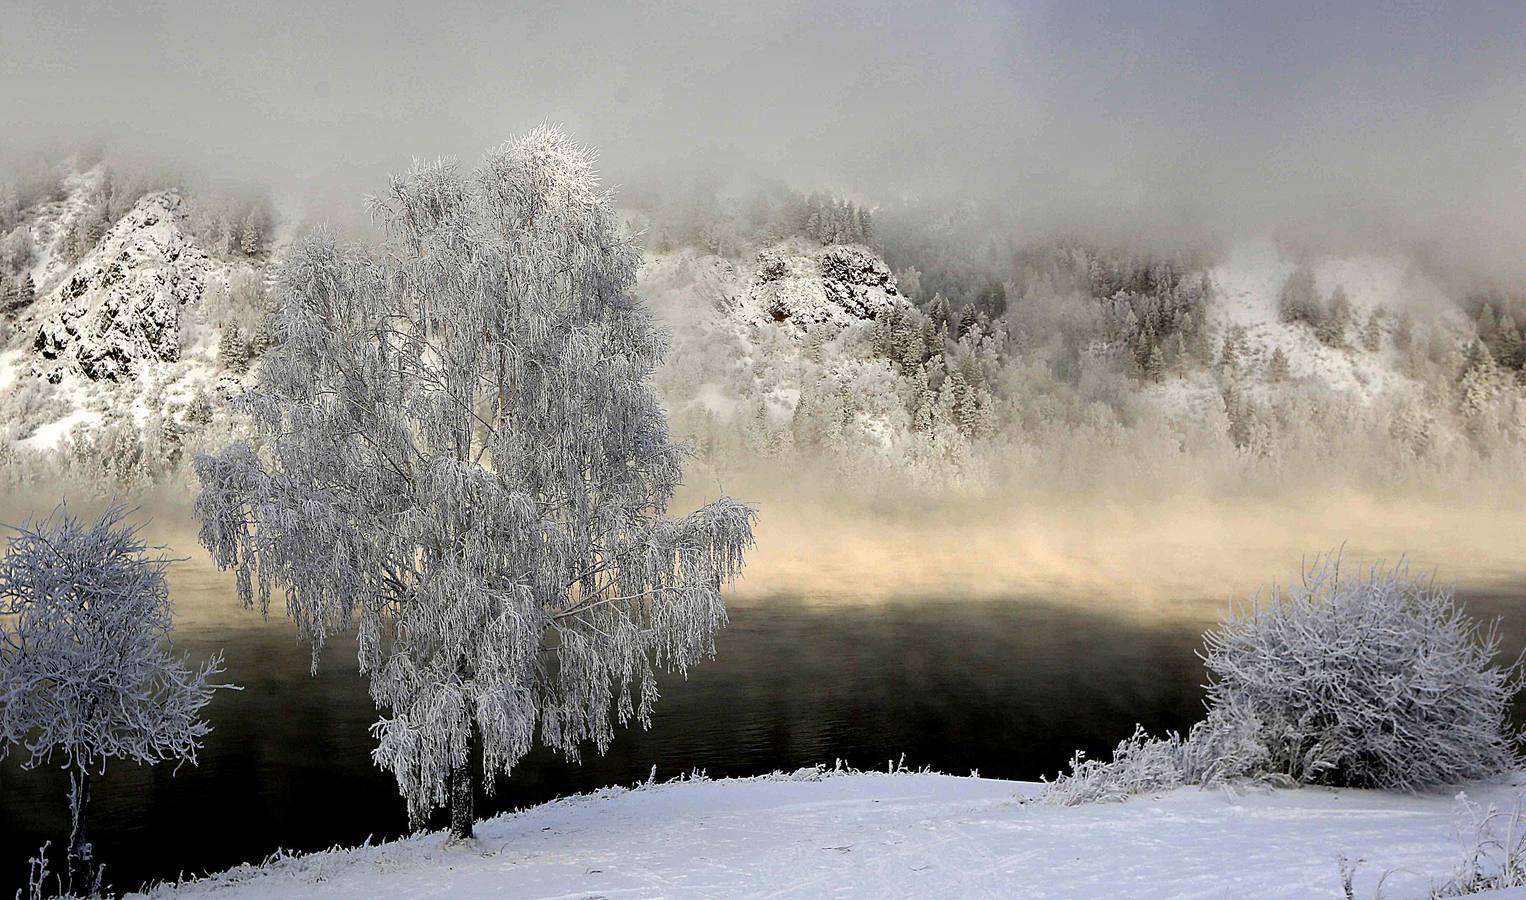 El Yeniséi es el principal río de Siberia. Su extensión de 4.093 kilómetros hasta desembocar en el Ártico lo convierte en uno de los más largos del mundo. Aunque hay numerosas leyendas sobre el origen de la palabra Yeniséi, la mayoría se inclina por «agua grande» o «río madre.» Sea como fuere, las temperaturas extraordinariamente bajas de las regiones por las que discurre le proporcionan una belleza inusual. Las fotografías están tomadas en la región de Karasnoyarsk, a unos 30 grados bajo cero.